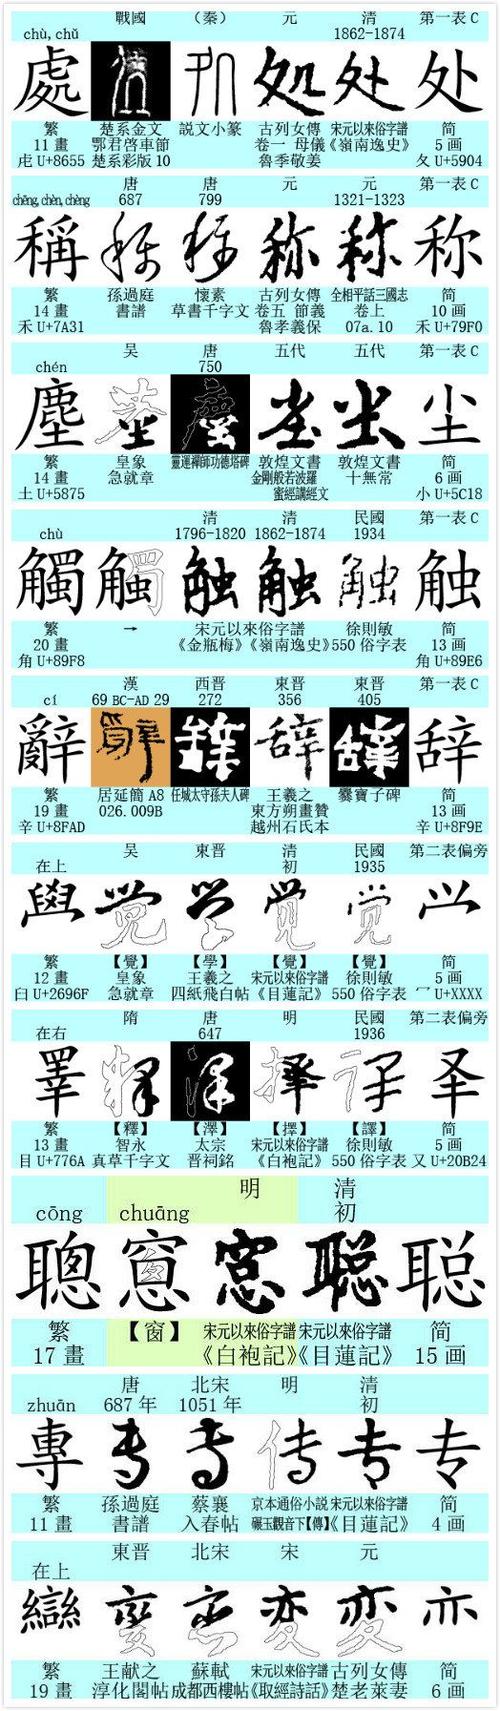 中国大陆禁止使用繁体字